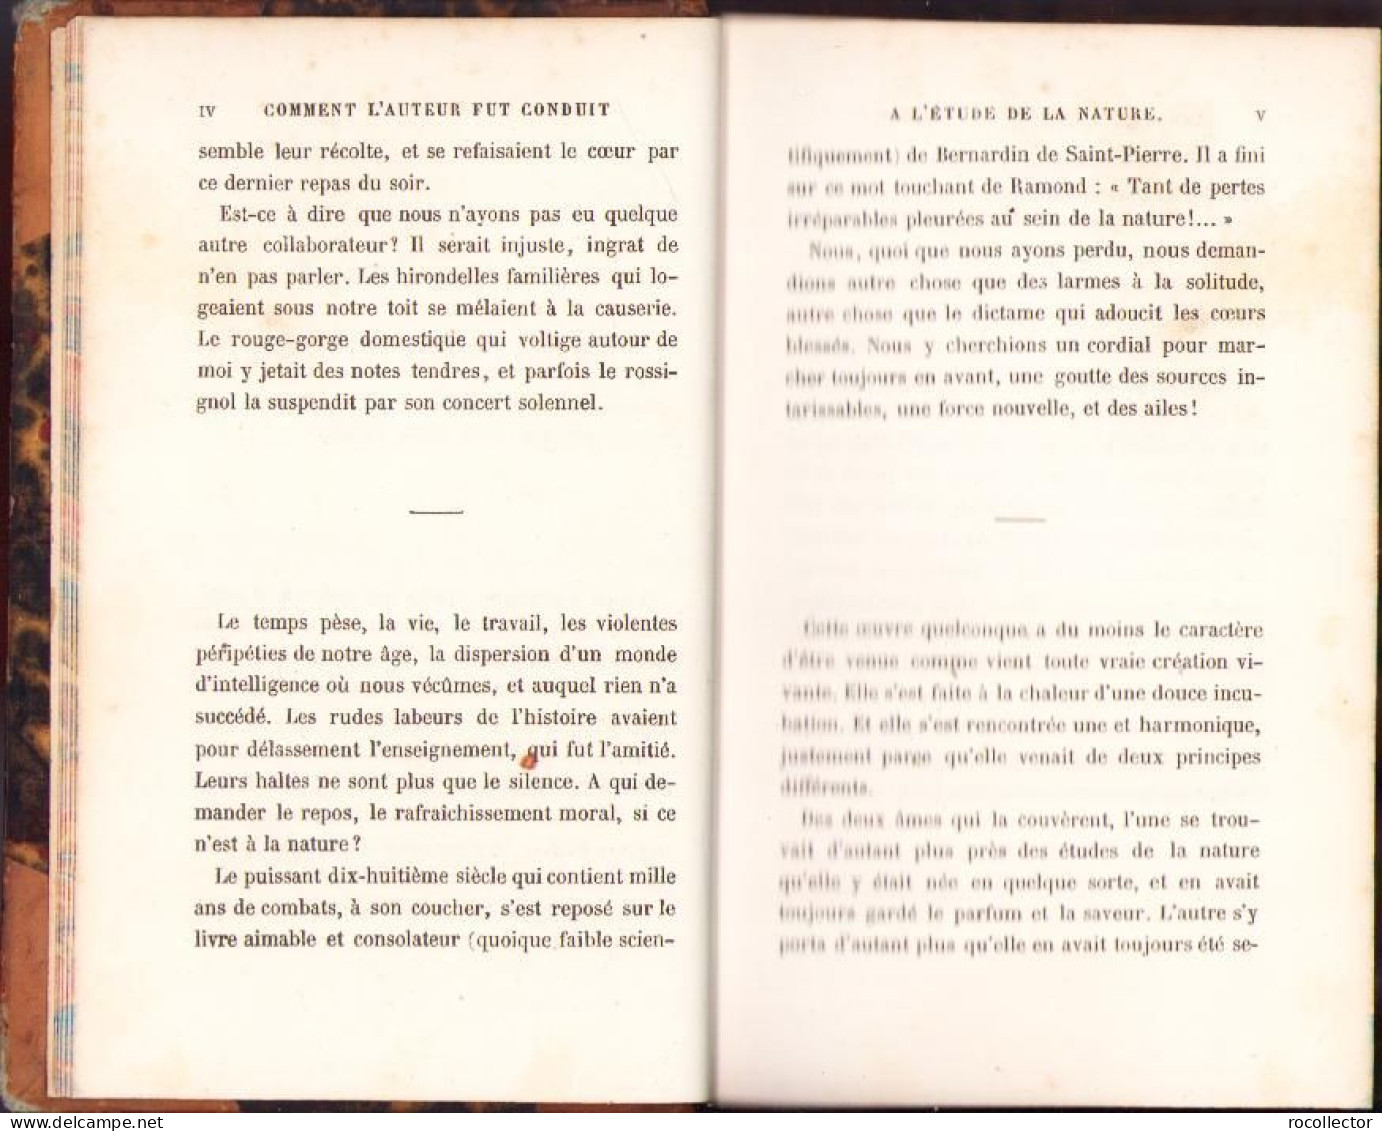 L’oiseau Par J. Michelet, 1858, Paris C2164 - Old Books